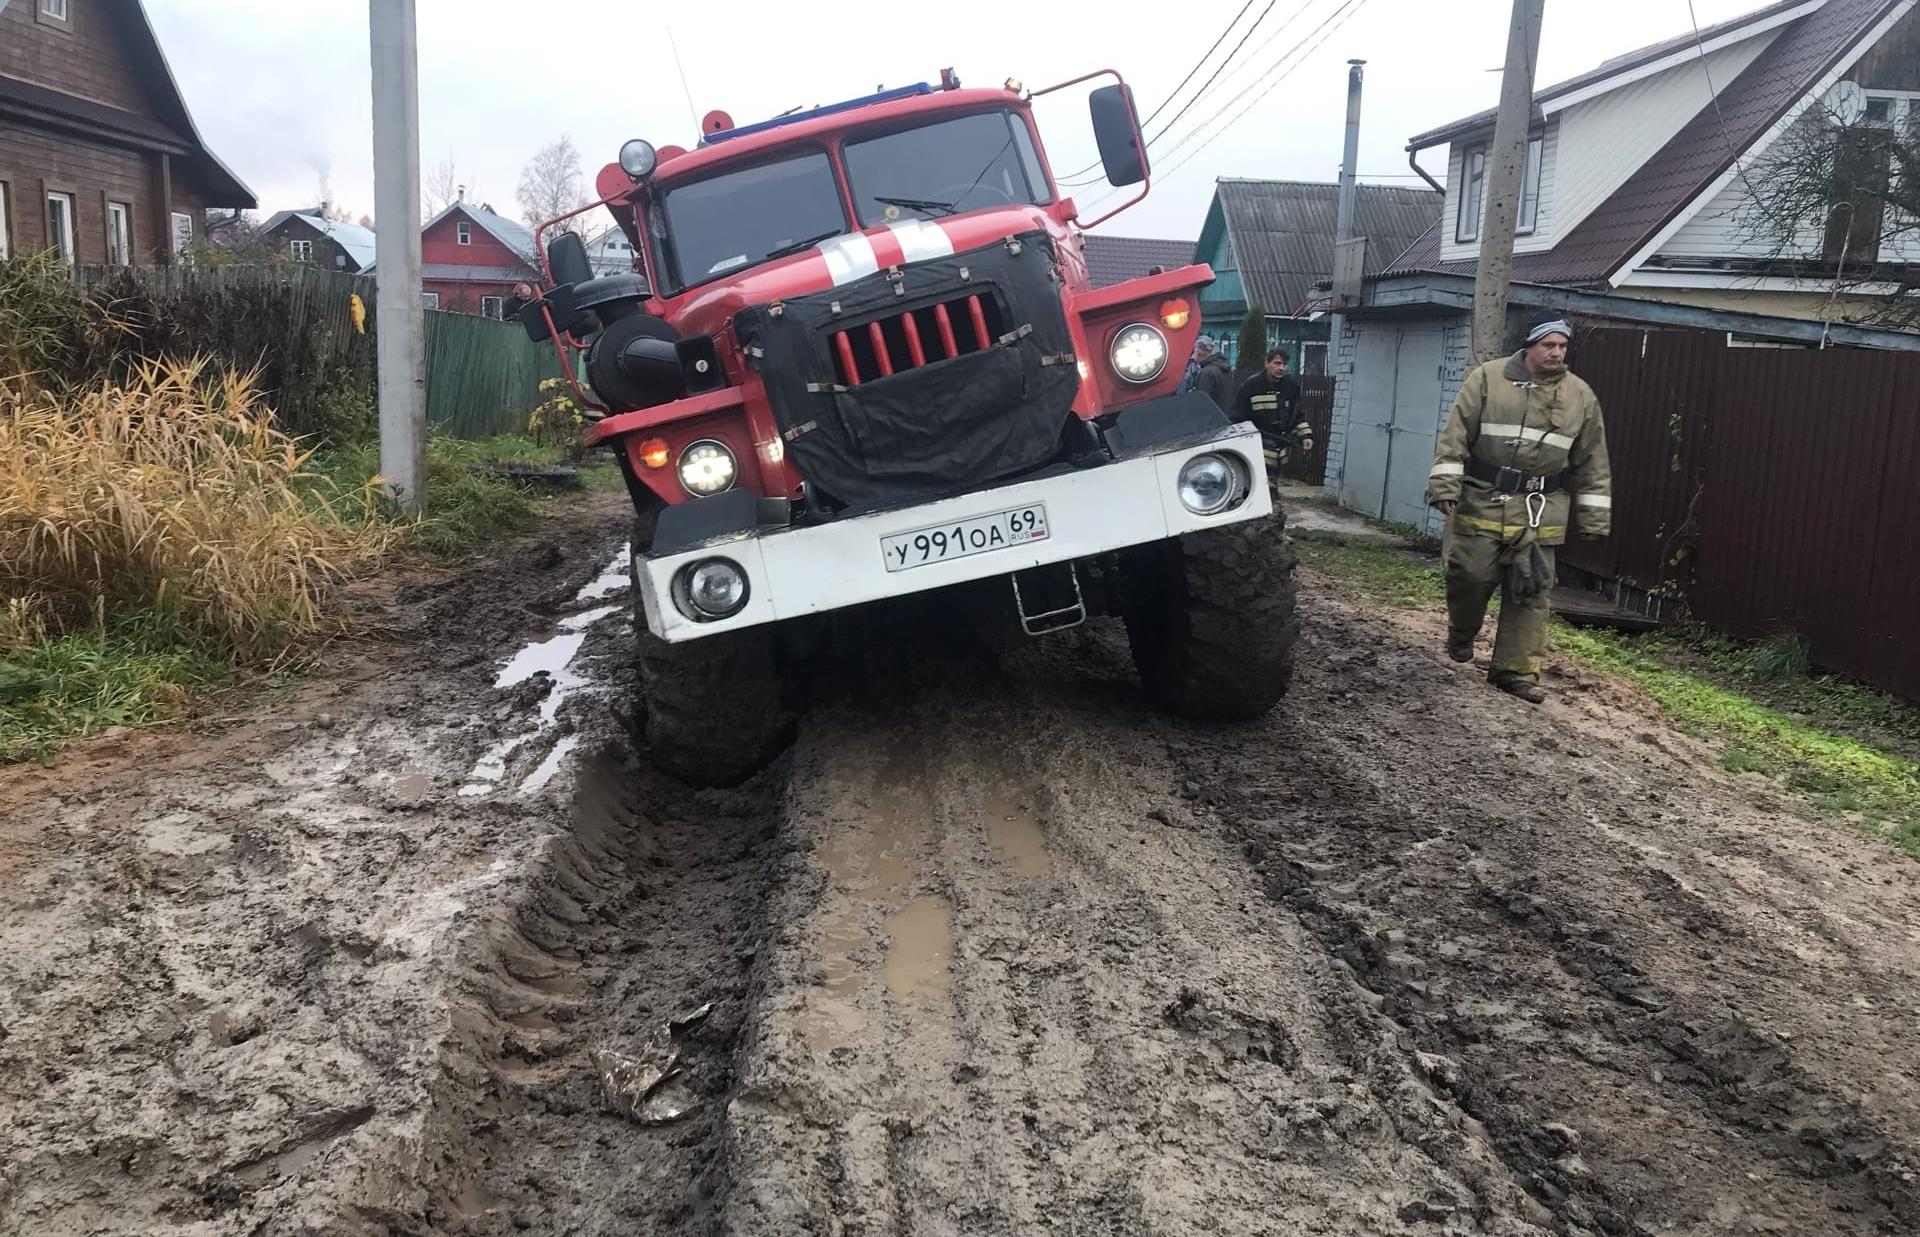 Пожарная машина застряла после тушения пожара в Нелидово - новости Афанасий